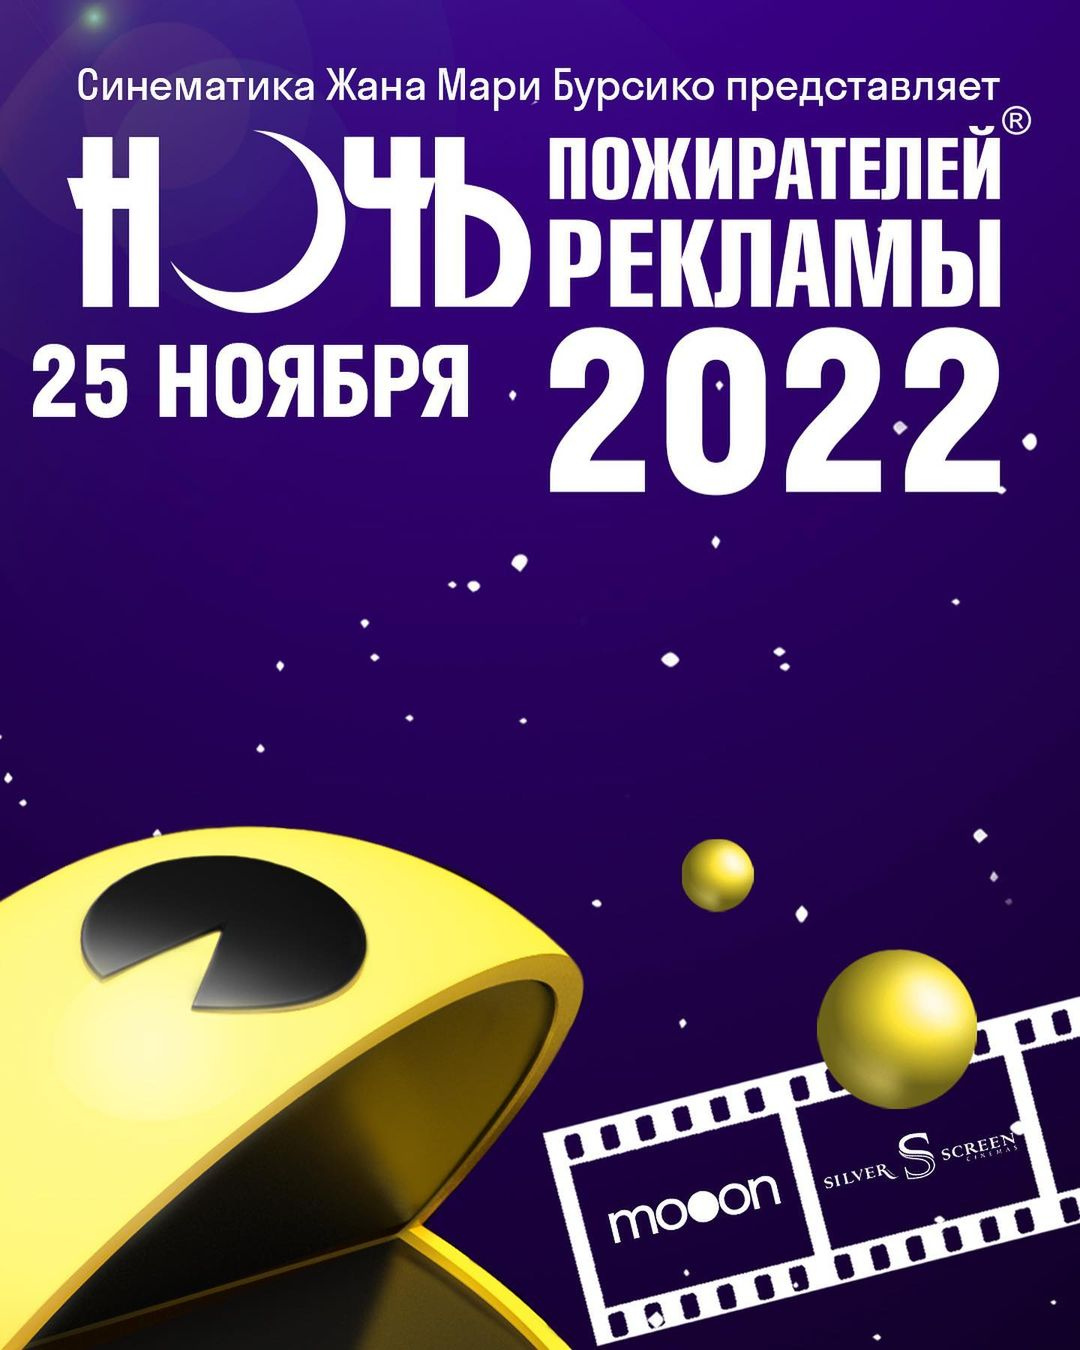 25 ноября в кинопространстве mooon пройдёт «Ночь пожирателей рекламы 2022» — легендарное шоу, покорившее весь мир!